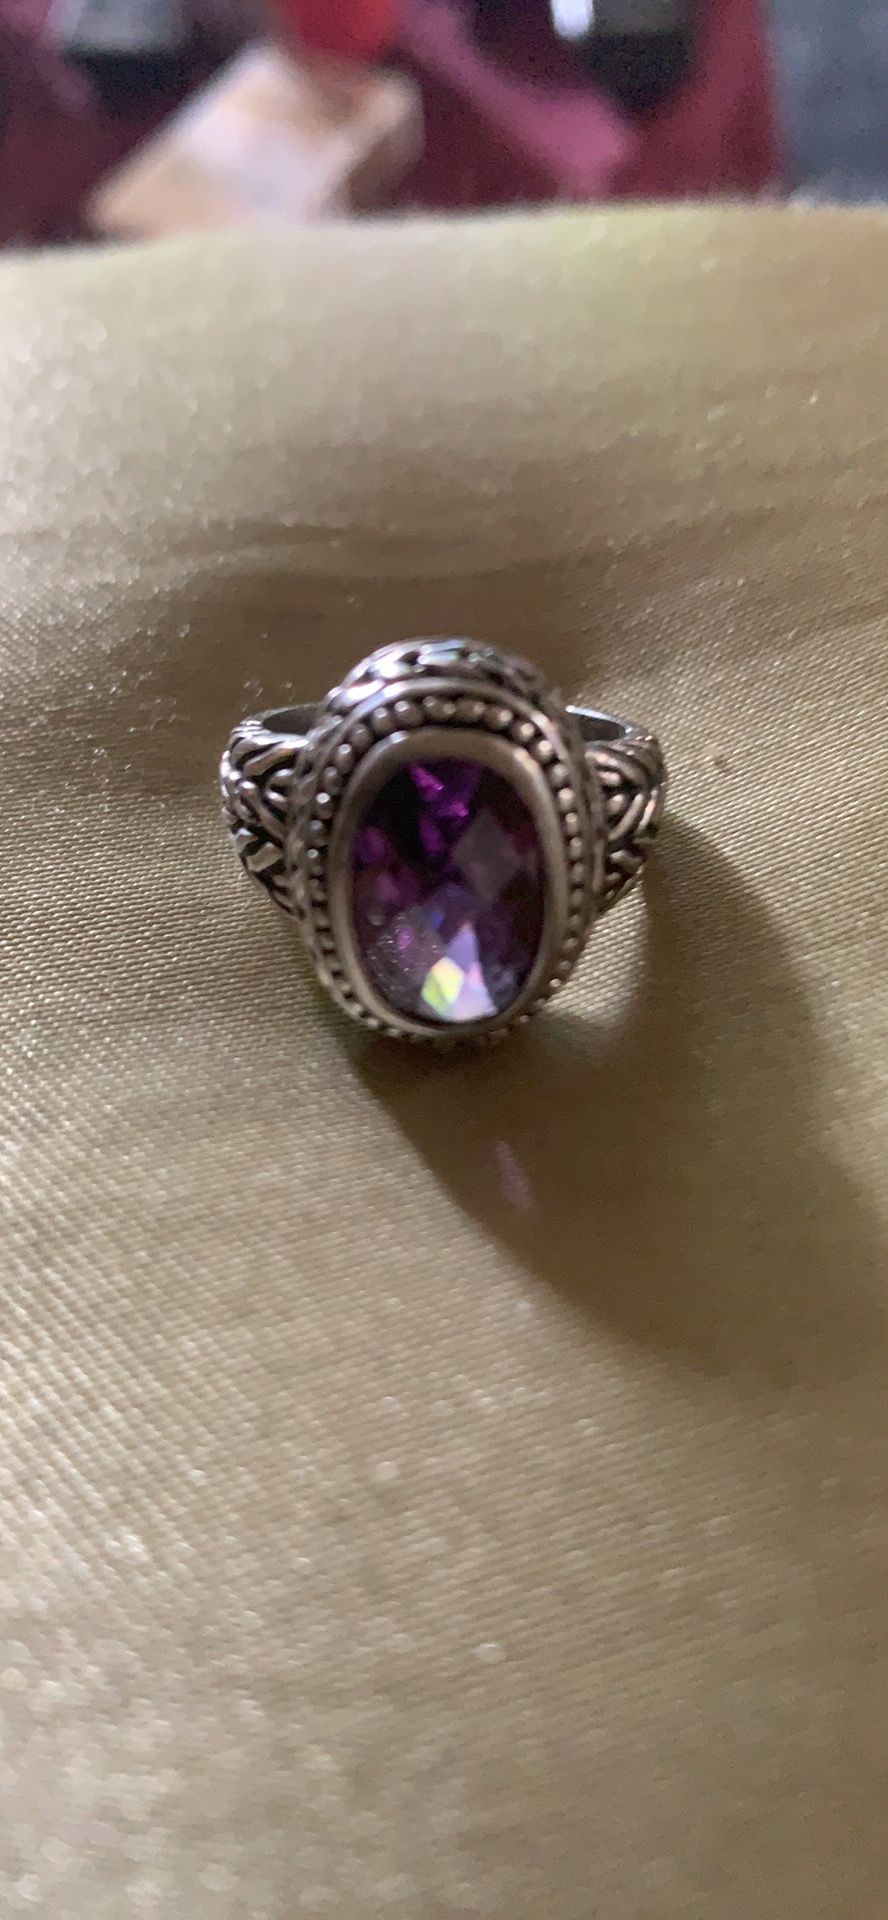 Beautiful purple stone ring